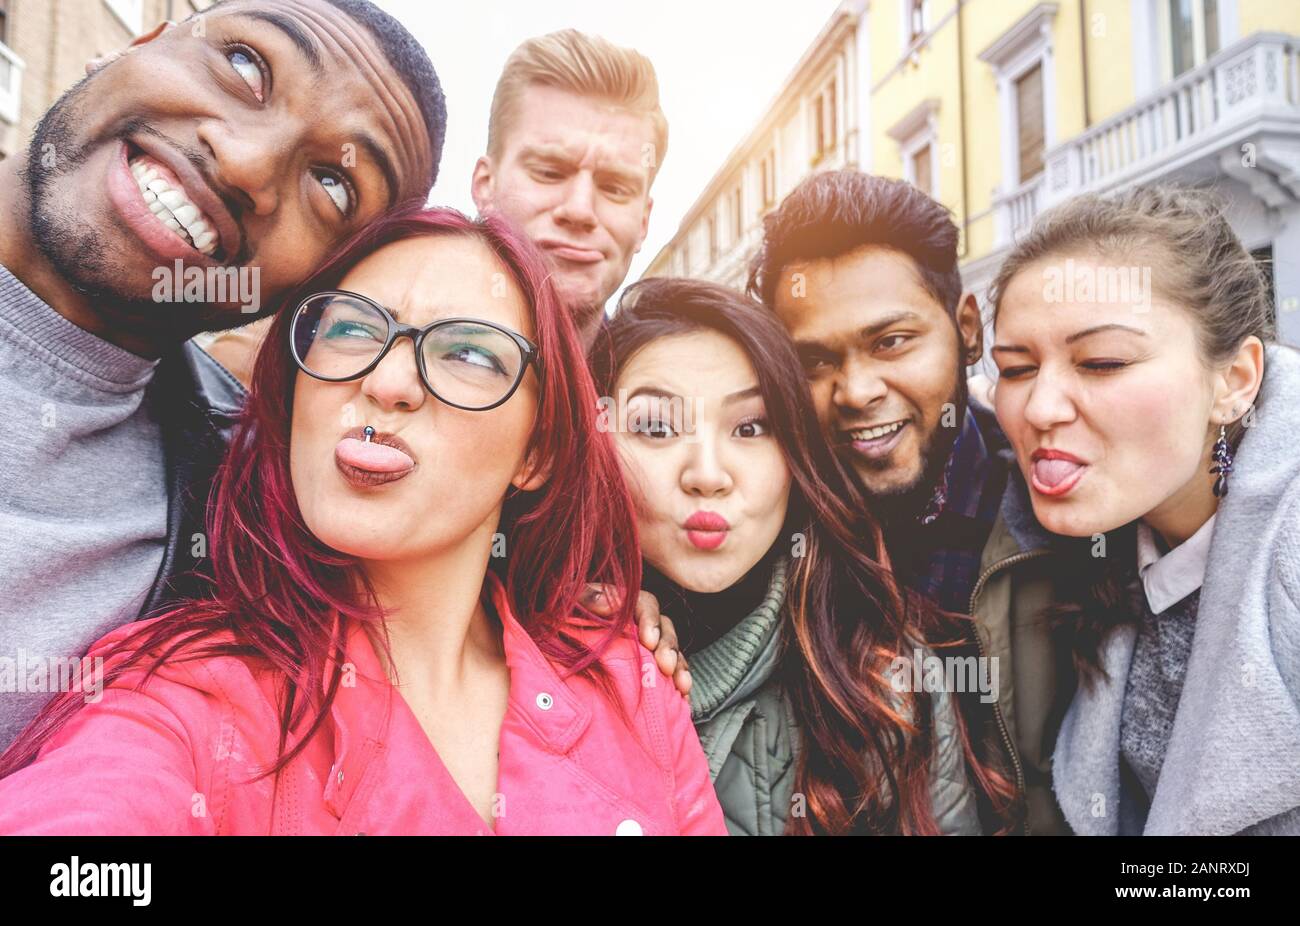 Fröhliche Freunde aus verschiedenen Kulturen und Rassen, die selfie dabei haben, lustige Gesichter zu machen - Jugend, Jahrtausende Generation und Freundschaftskonzept mit Jugendlichen Stockfoto